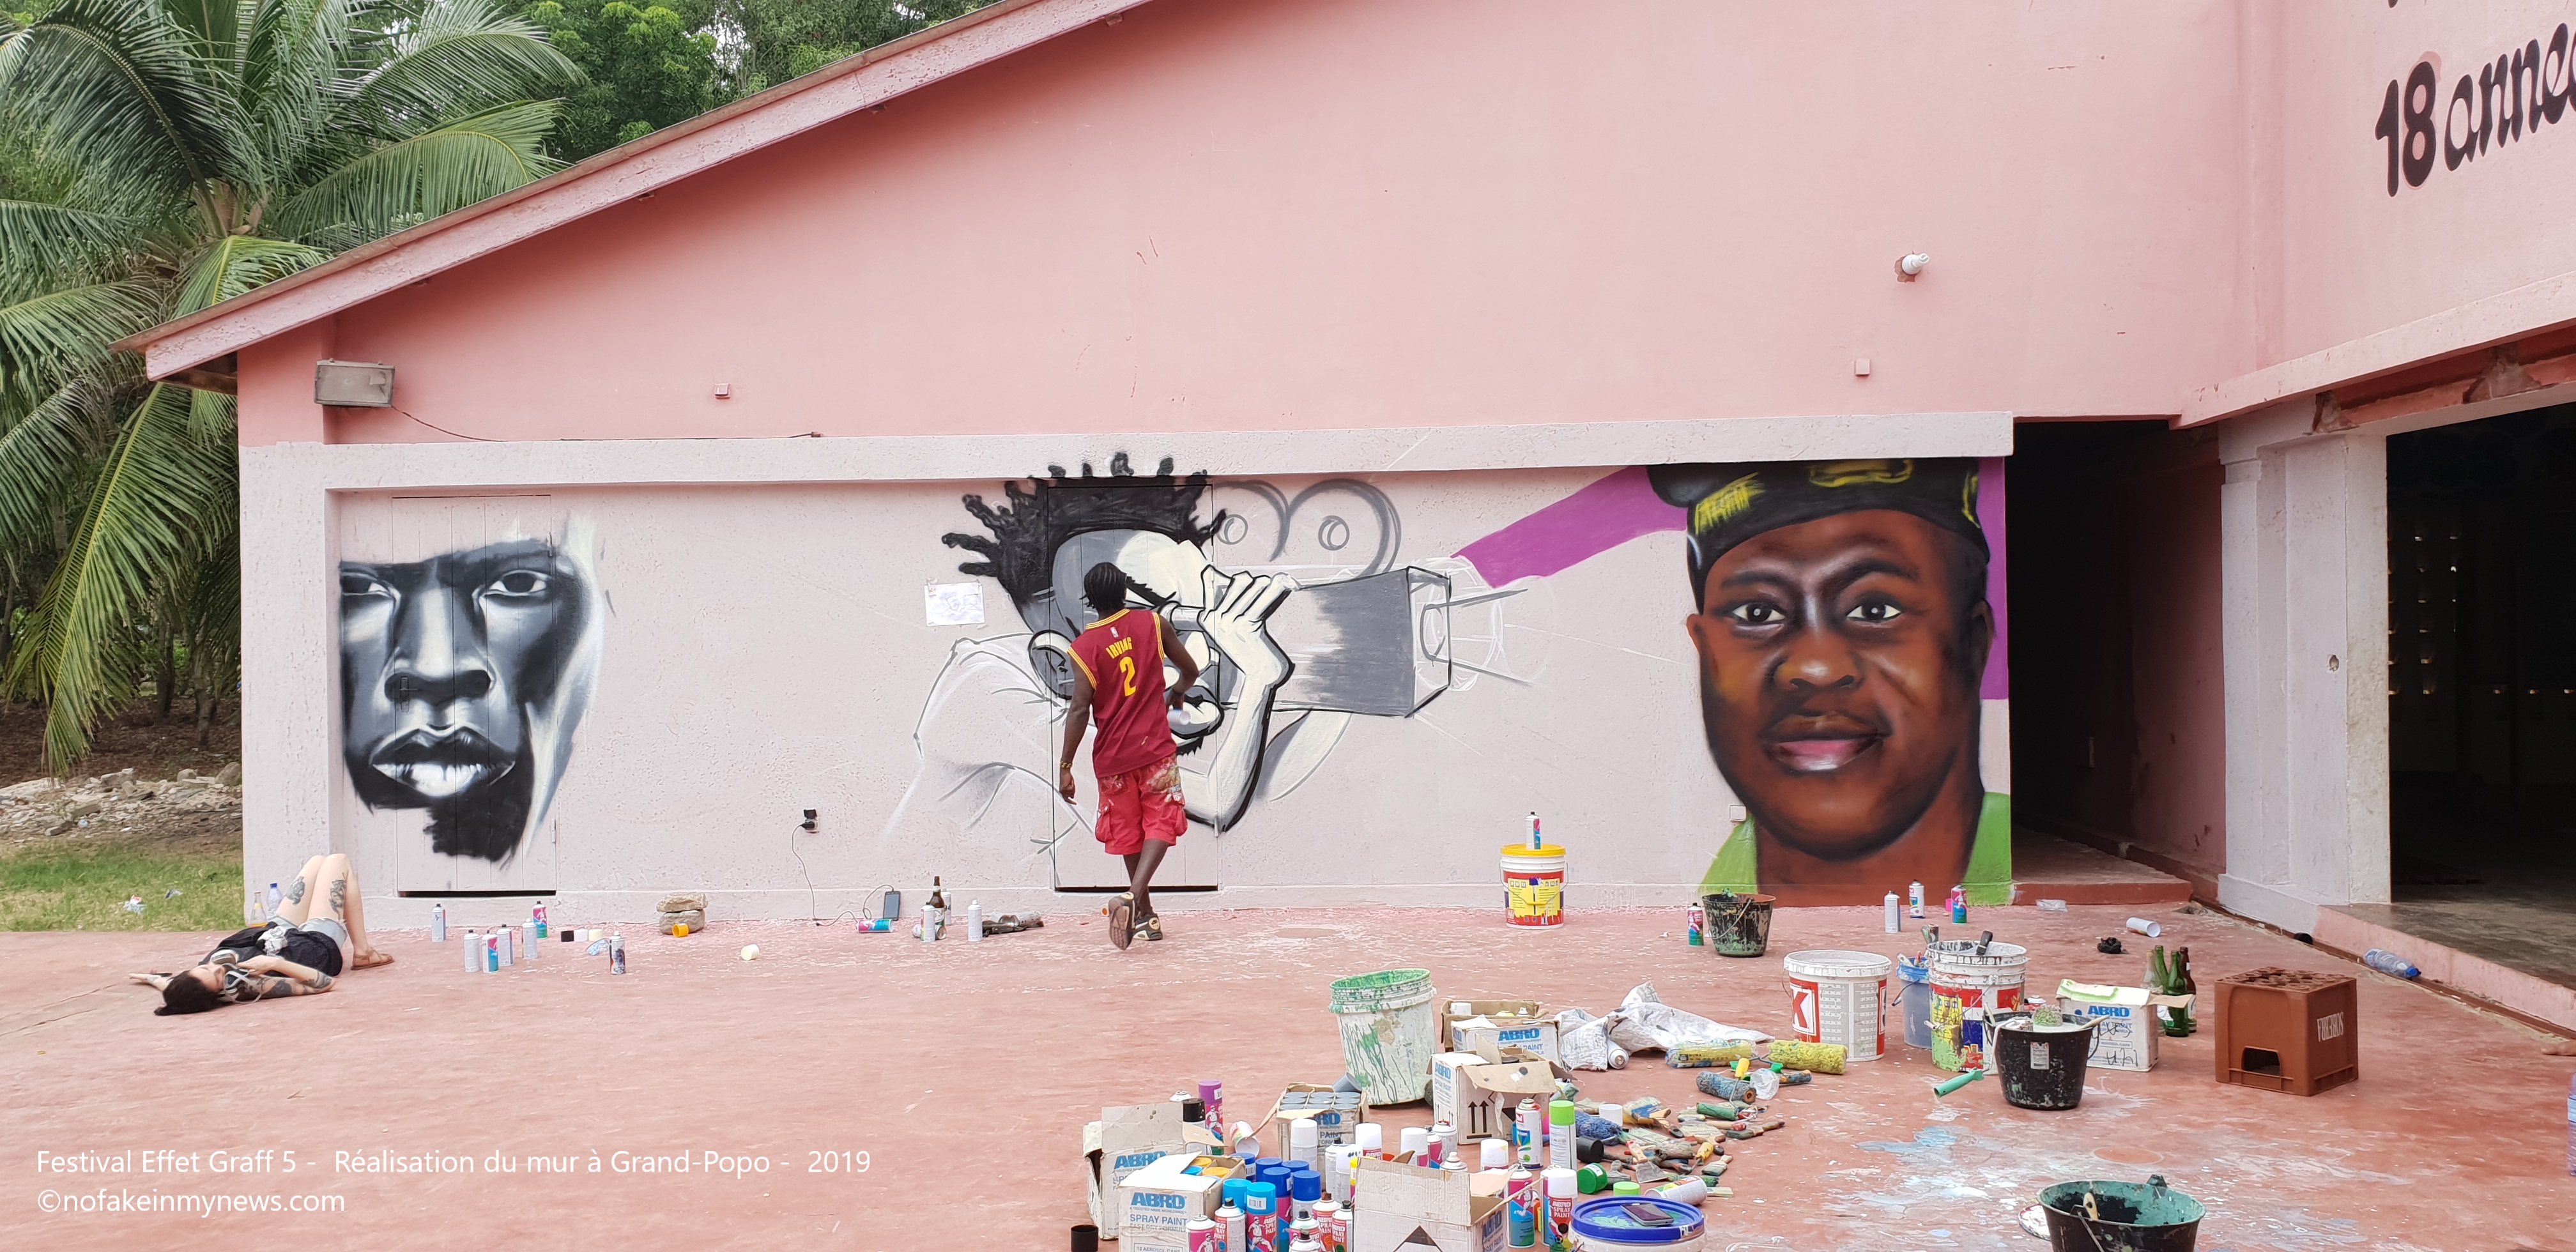 Festival Effet Graff 5 - Réalisation du mur à Grand-Popo - 2019 ©nofakeinmynews